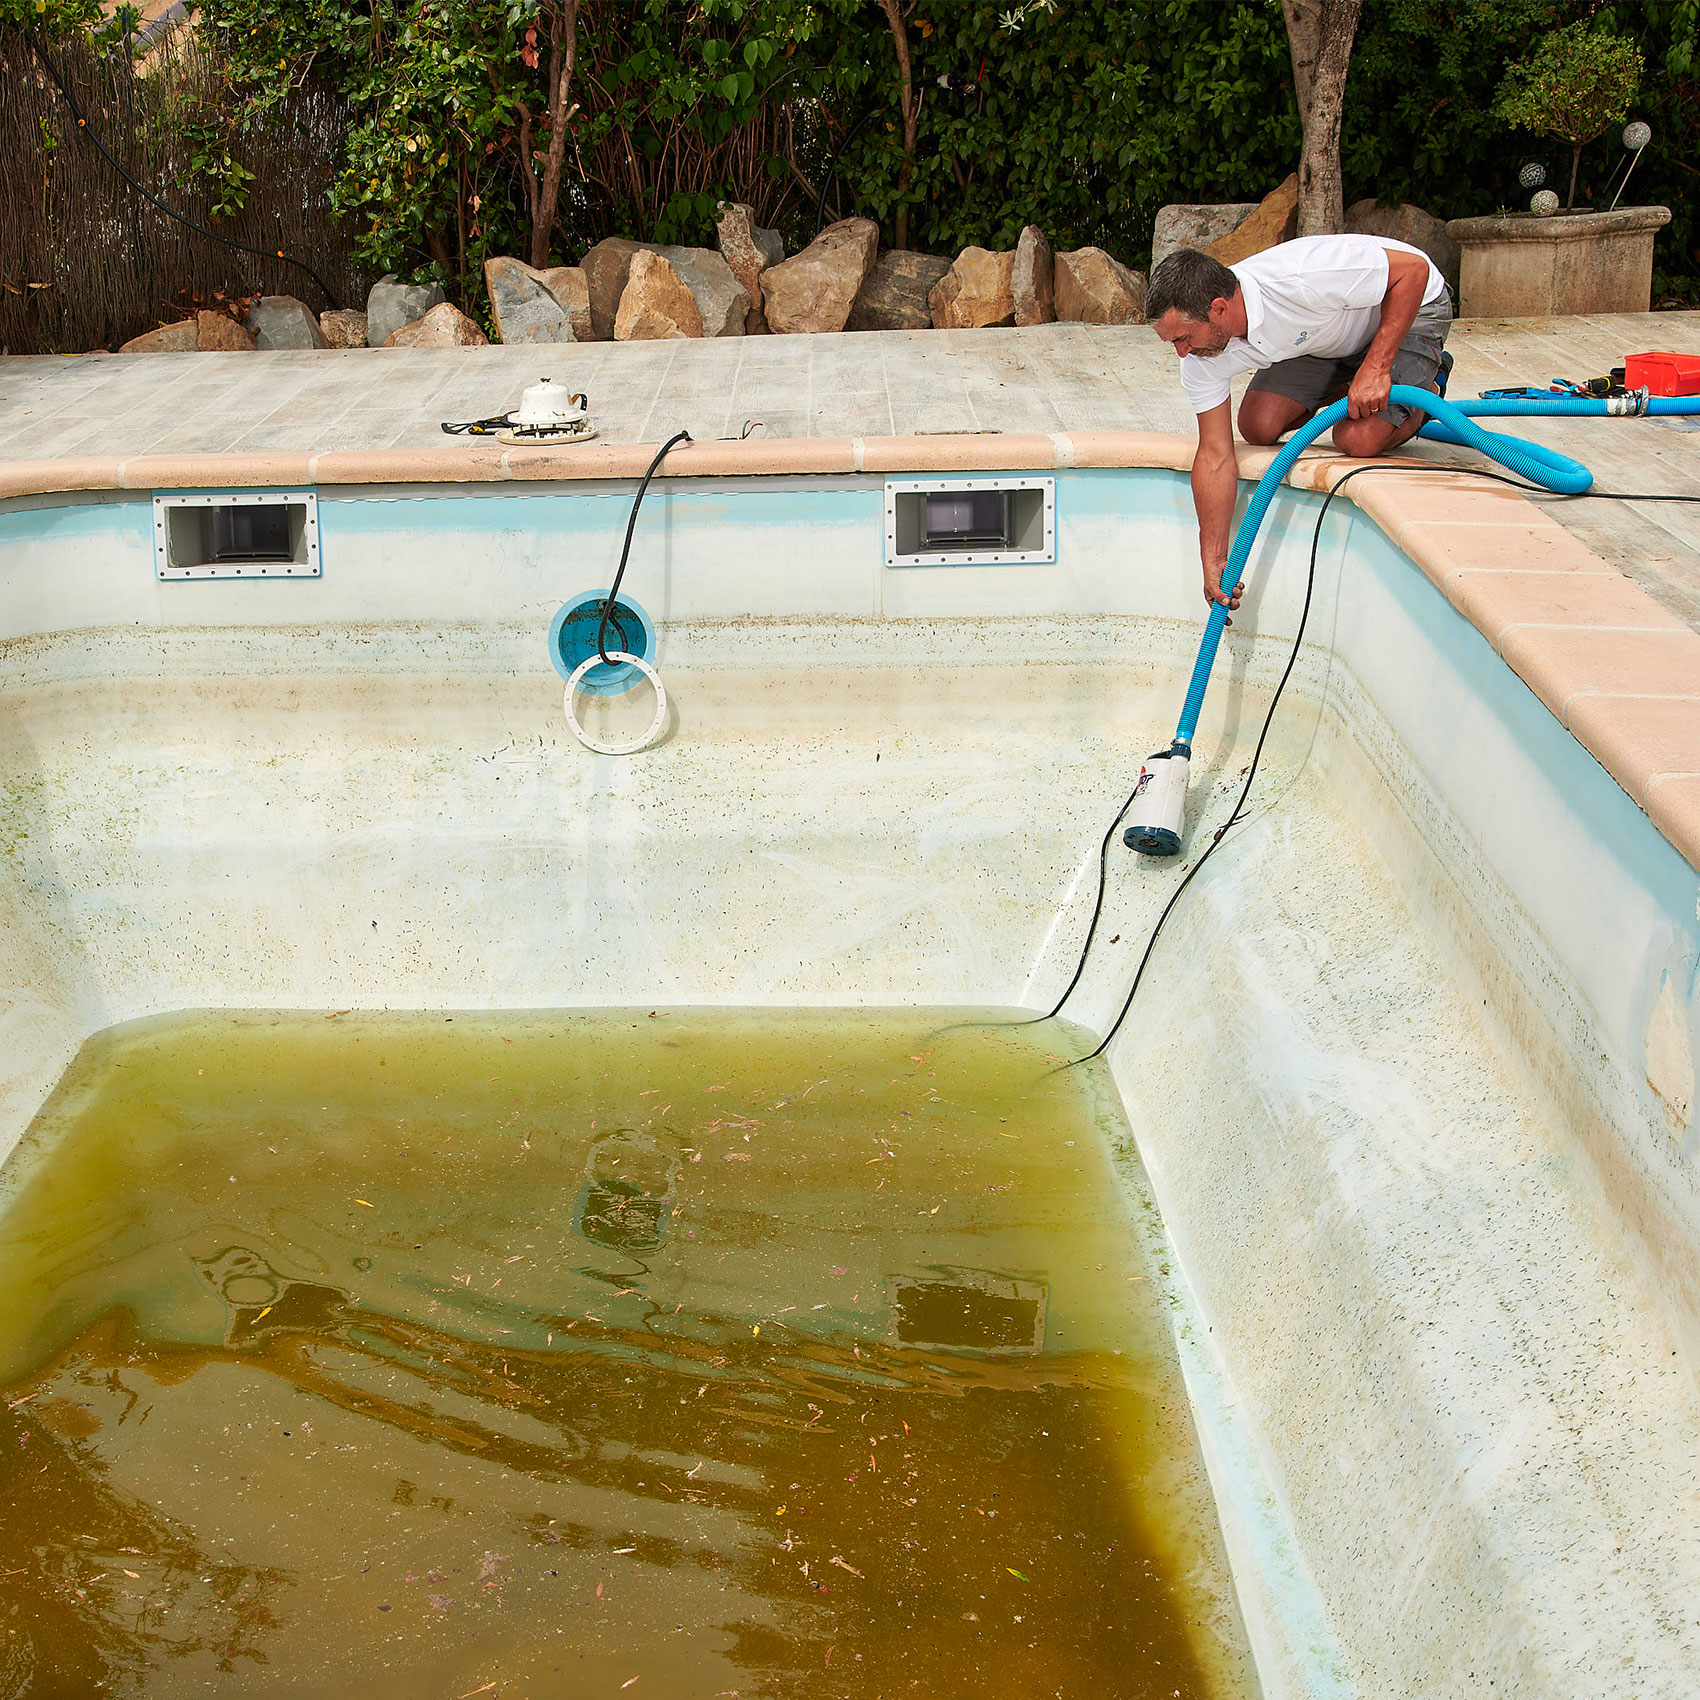 Homme nettoyant une piscine sale avec un aspirateur manuel, entouré de rochers et de végétation.